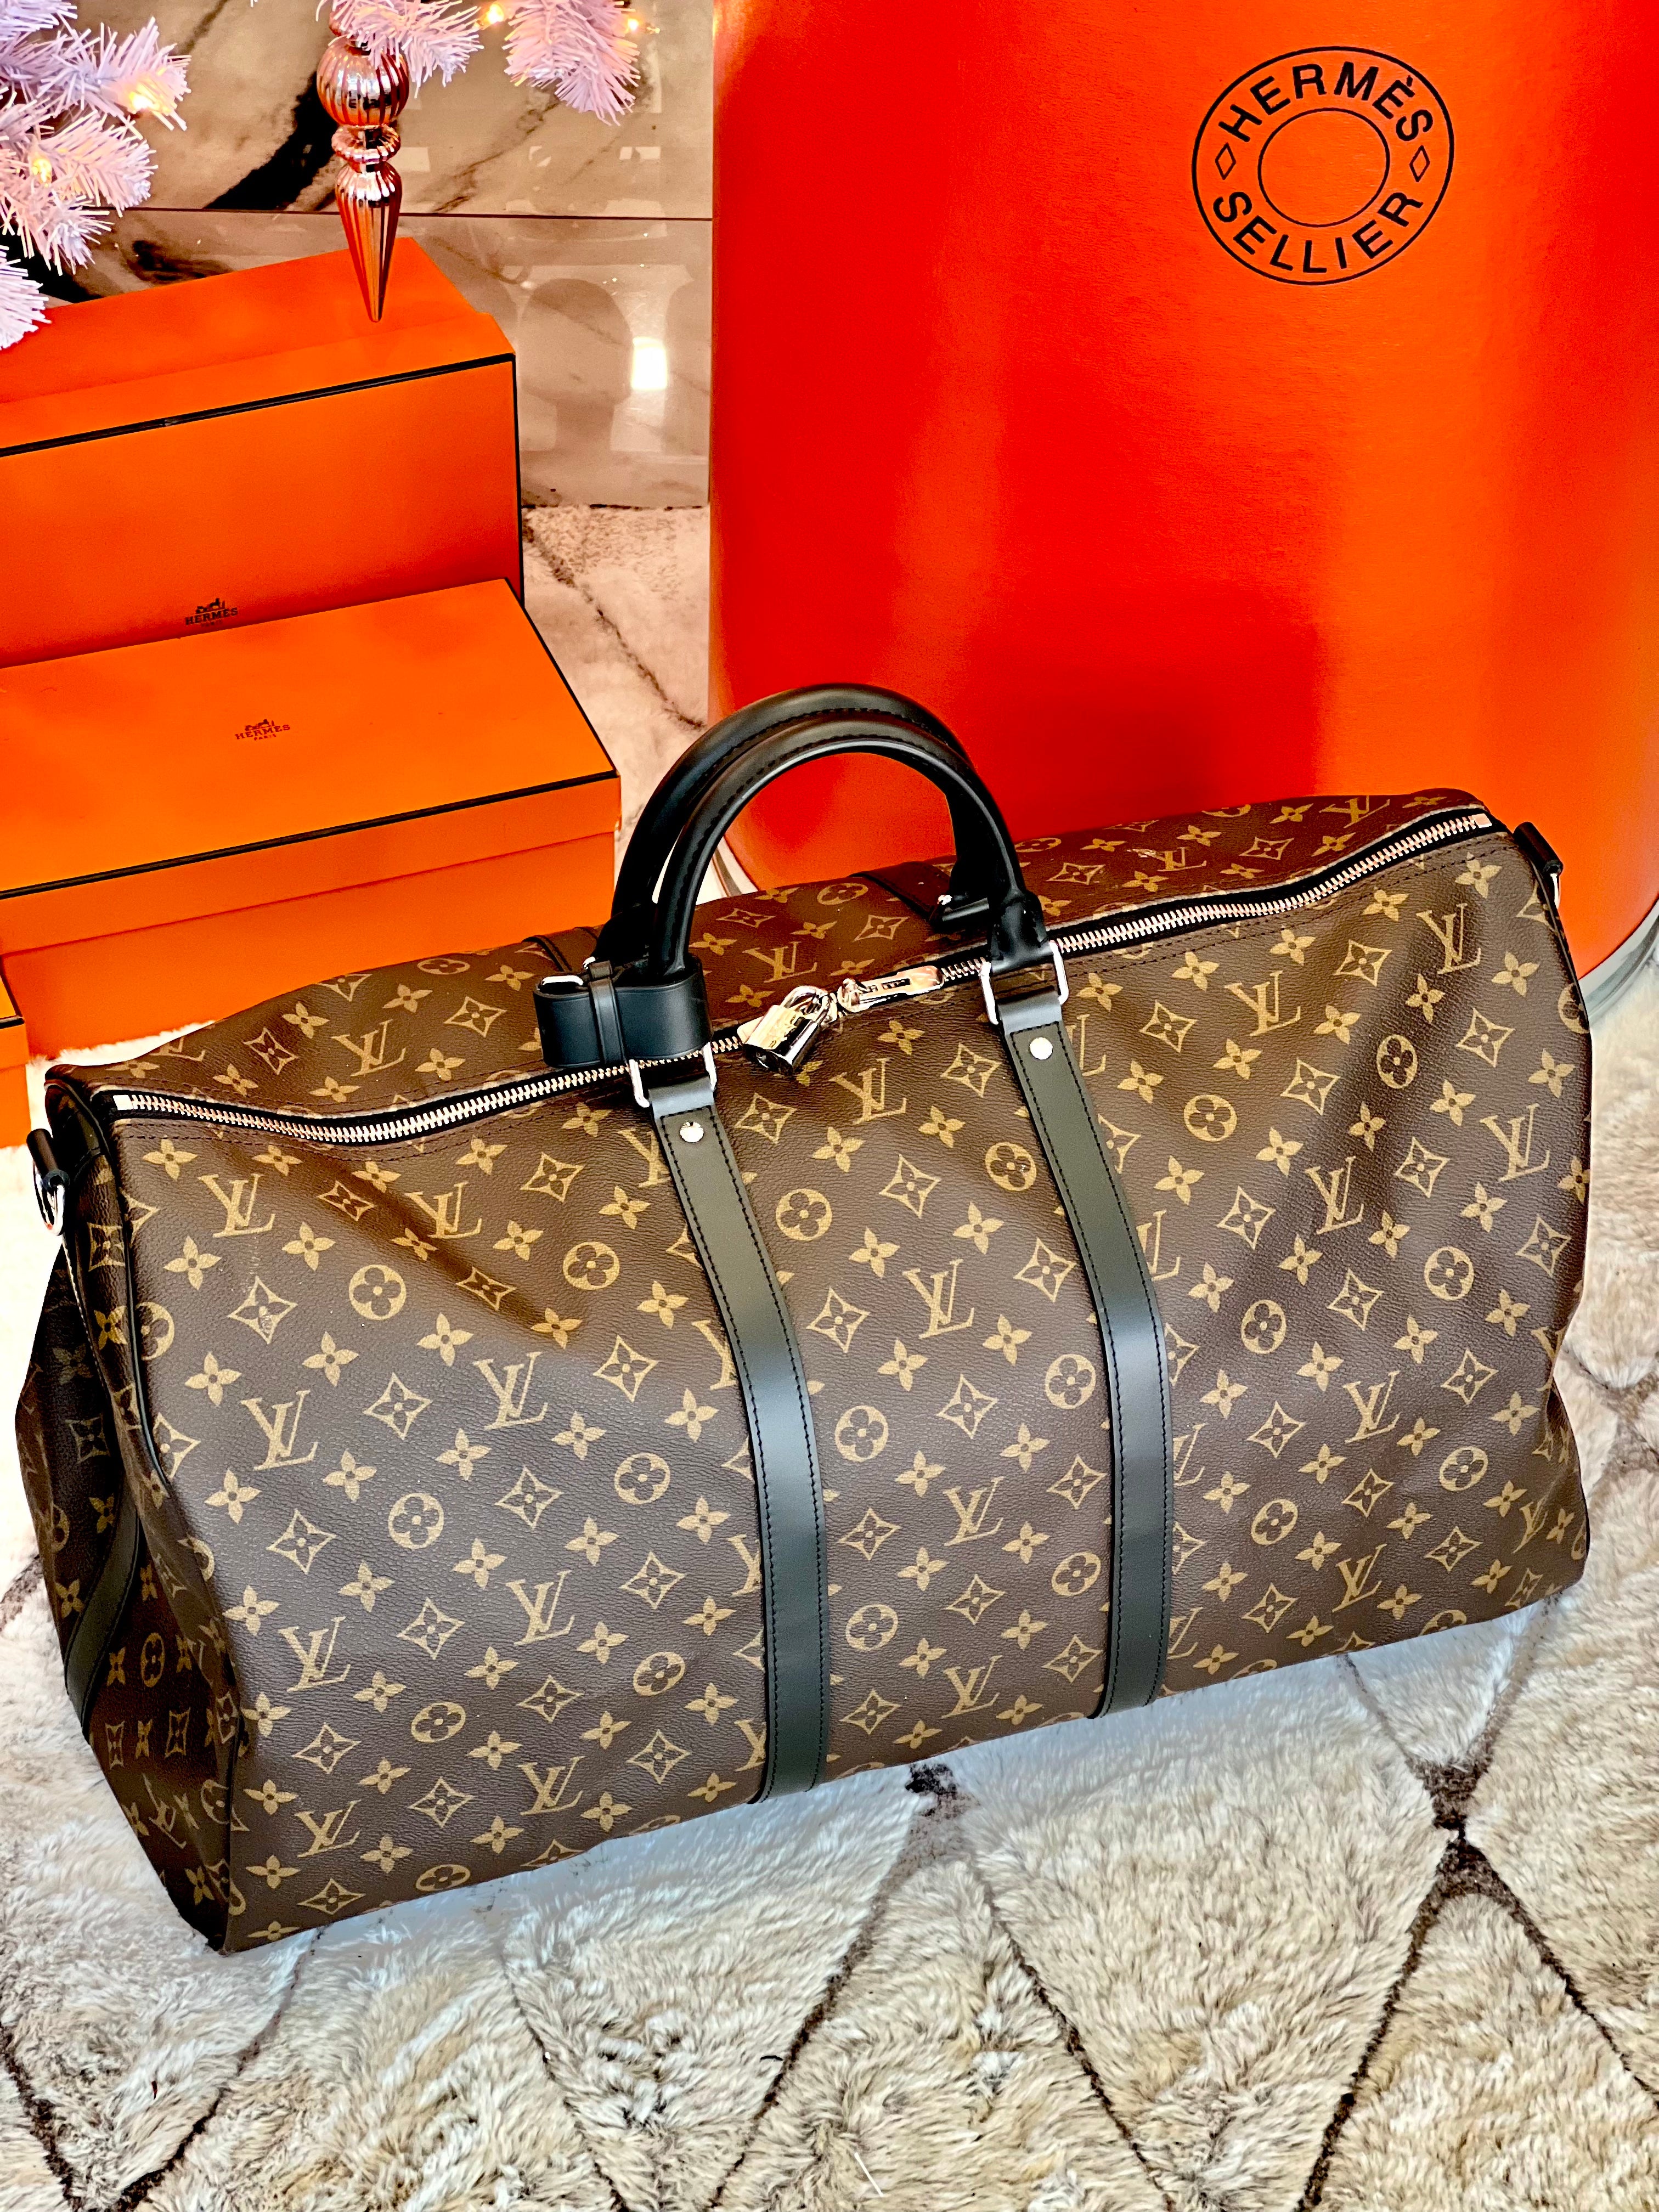 Louis Vuitton Macassar Shopping Bag